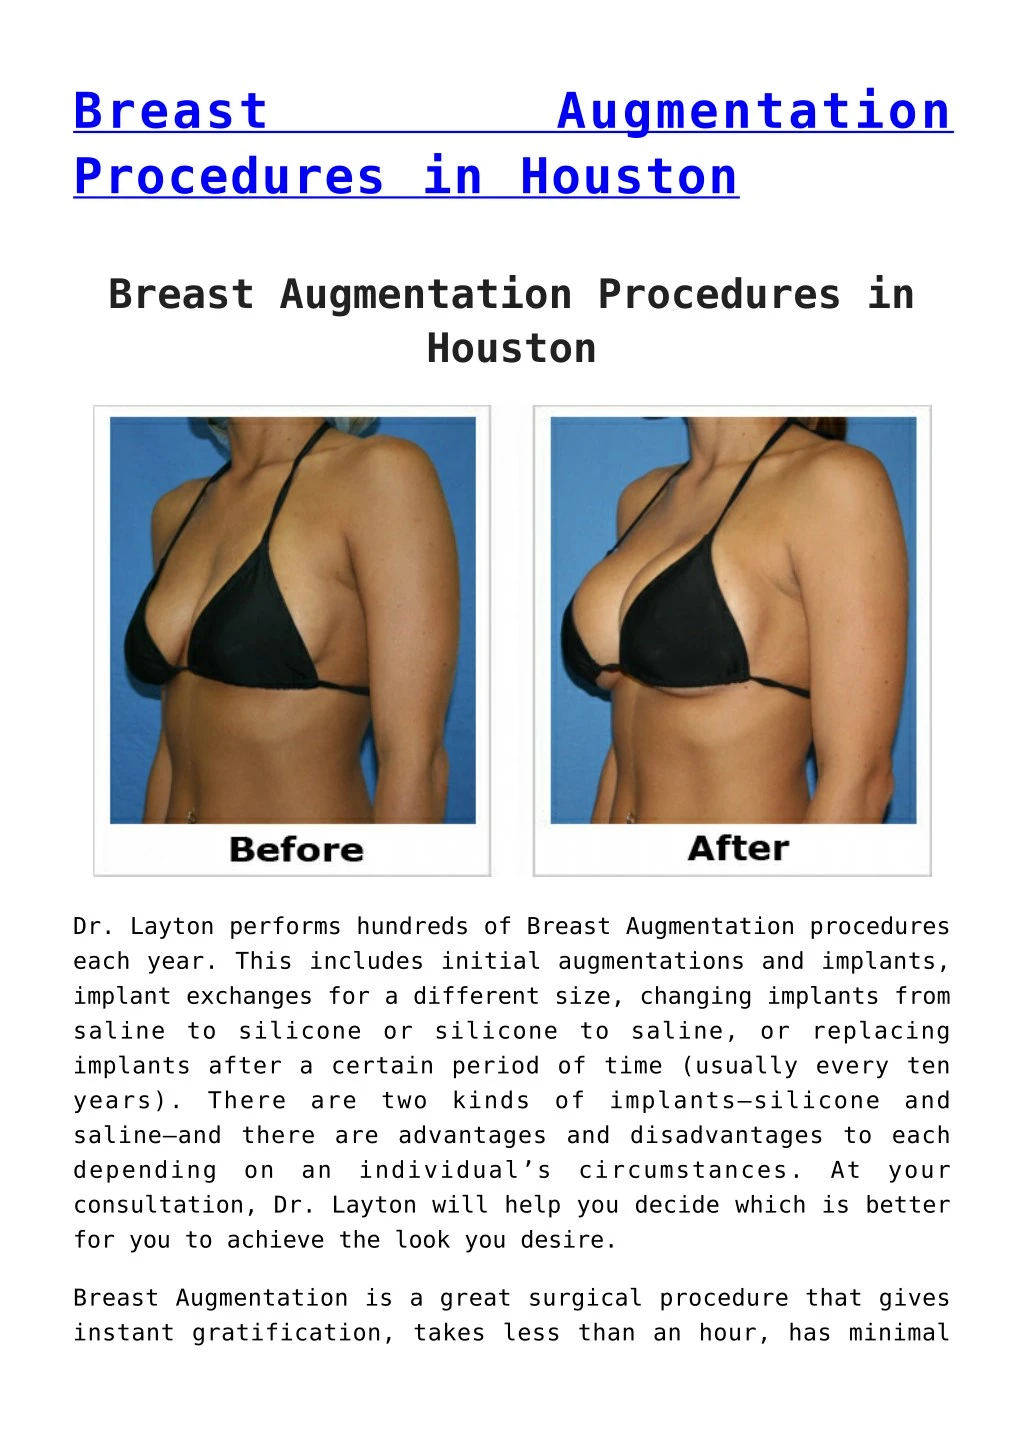 breast procedures in houston